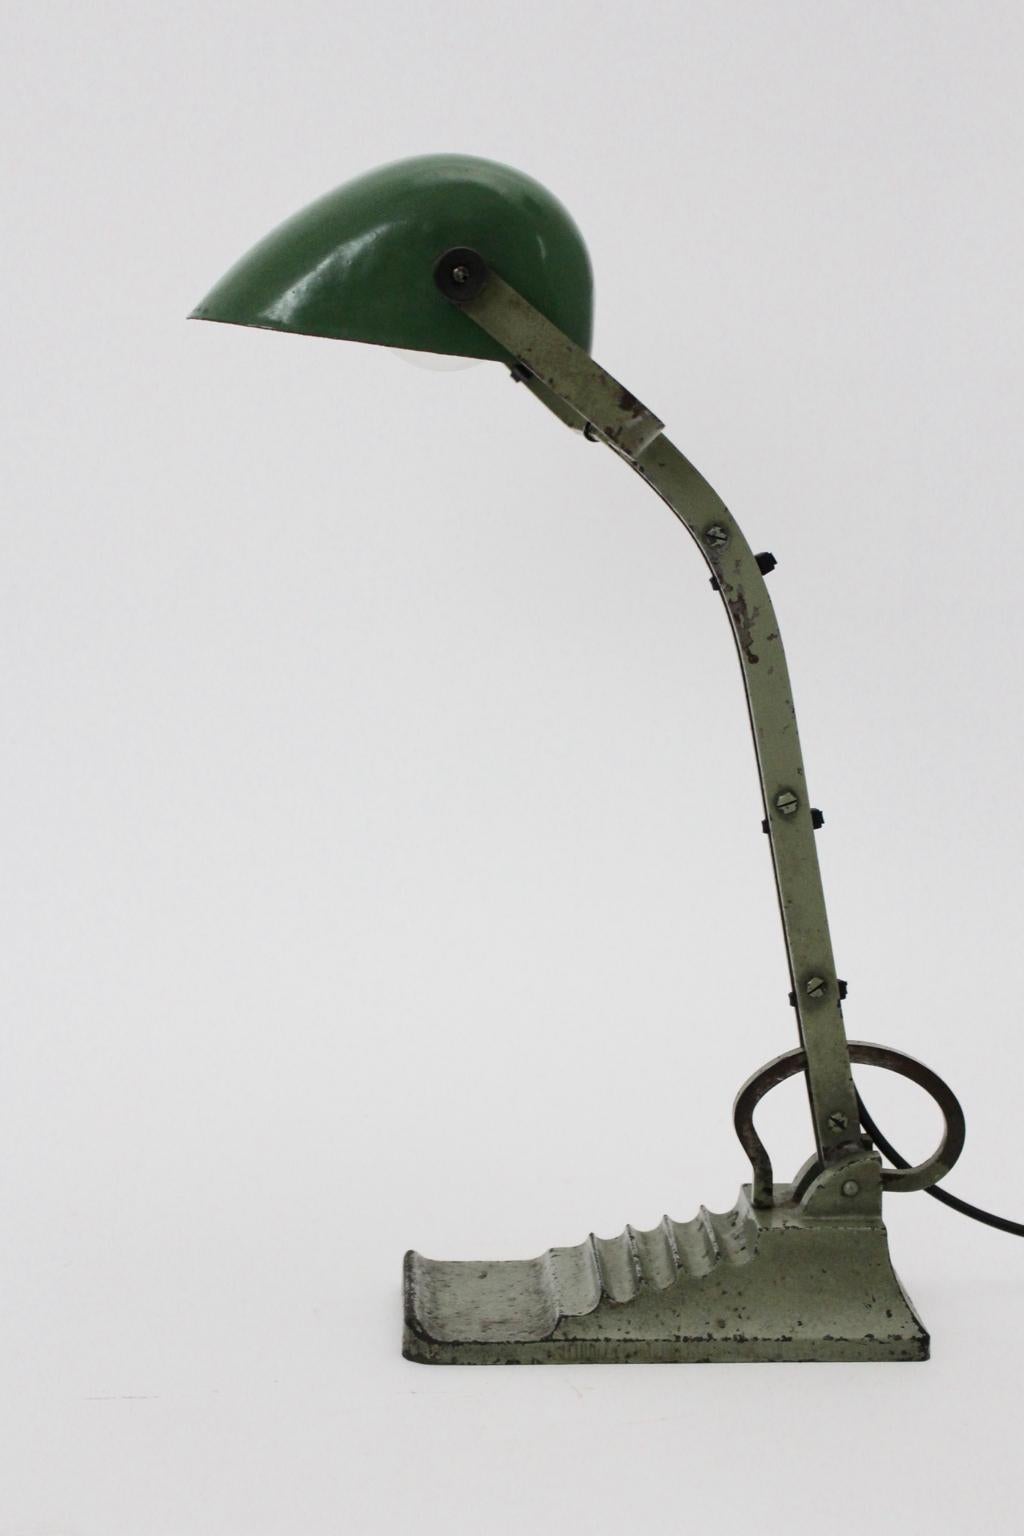 Lampe de table ou lampe de bureau d'architecte Bauhaus Art Déco en métal vert réglable de haut en bas, années 1920.
La base en métal laqué vert présente une belle patine.
L'abat-jour en métal est émaillé de vert et de blanc.
Une prise E 27
mesures